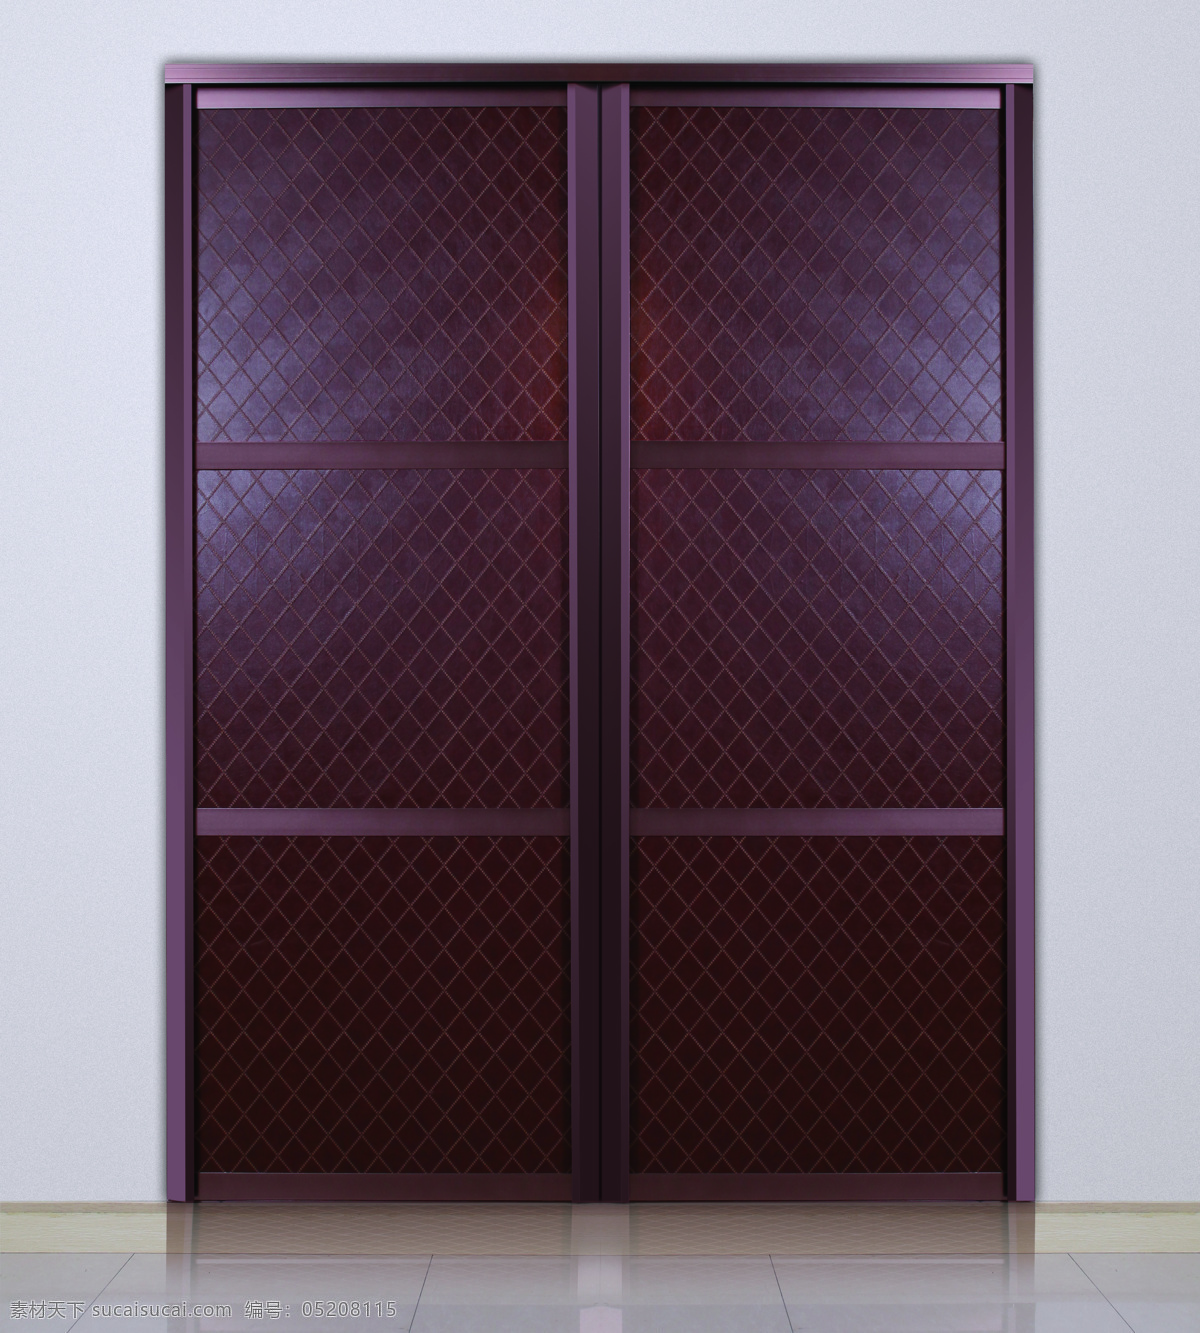 移动门 隔断门 环保门 环境设计 门 门窗 室内 室内设计 滑动门 移门 现代门 隔段门 装饰素材